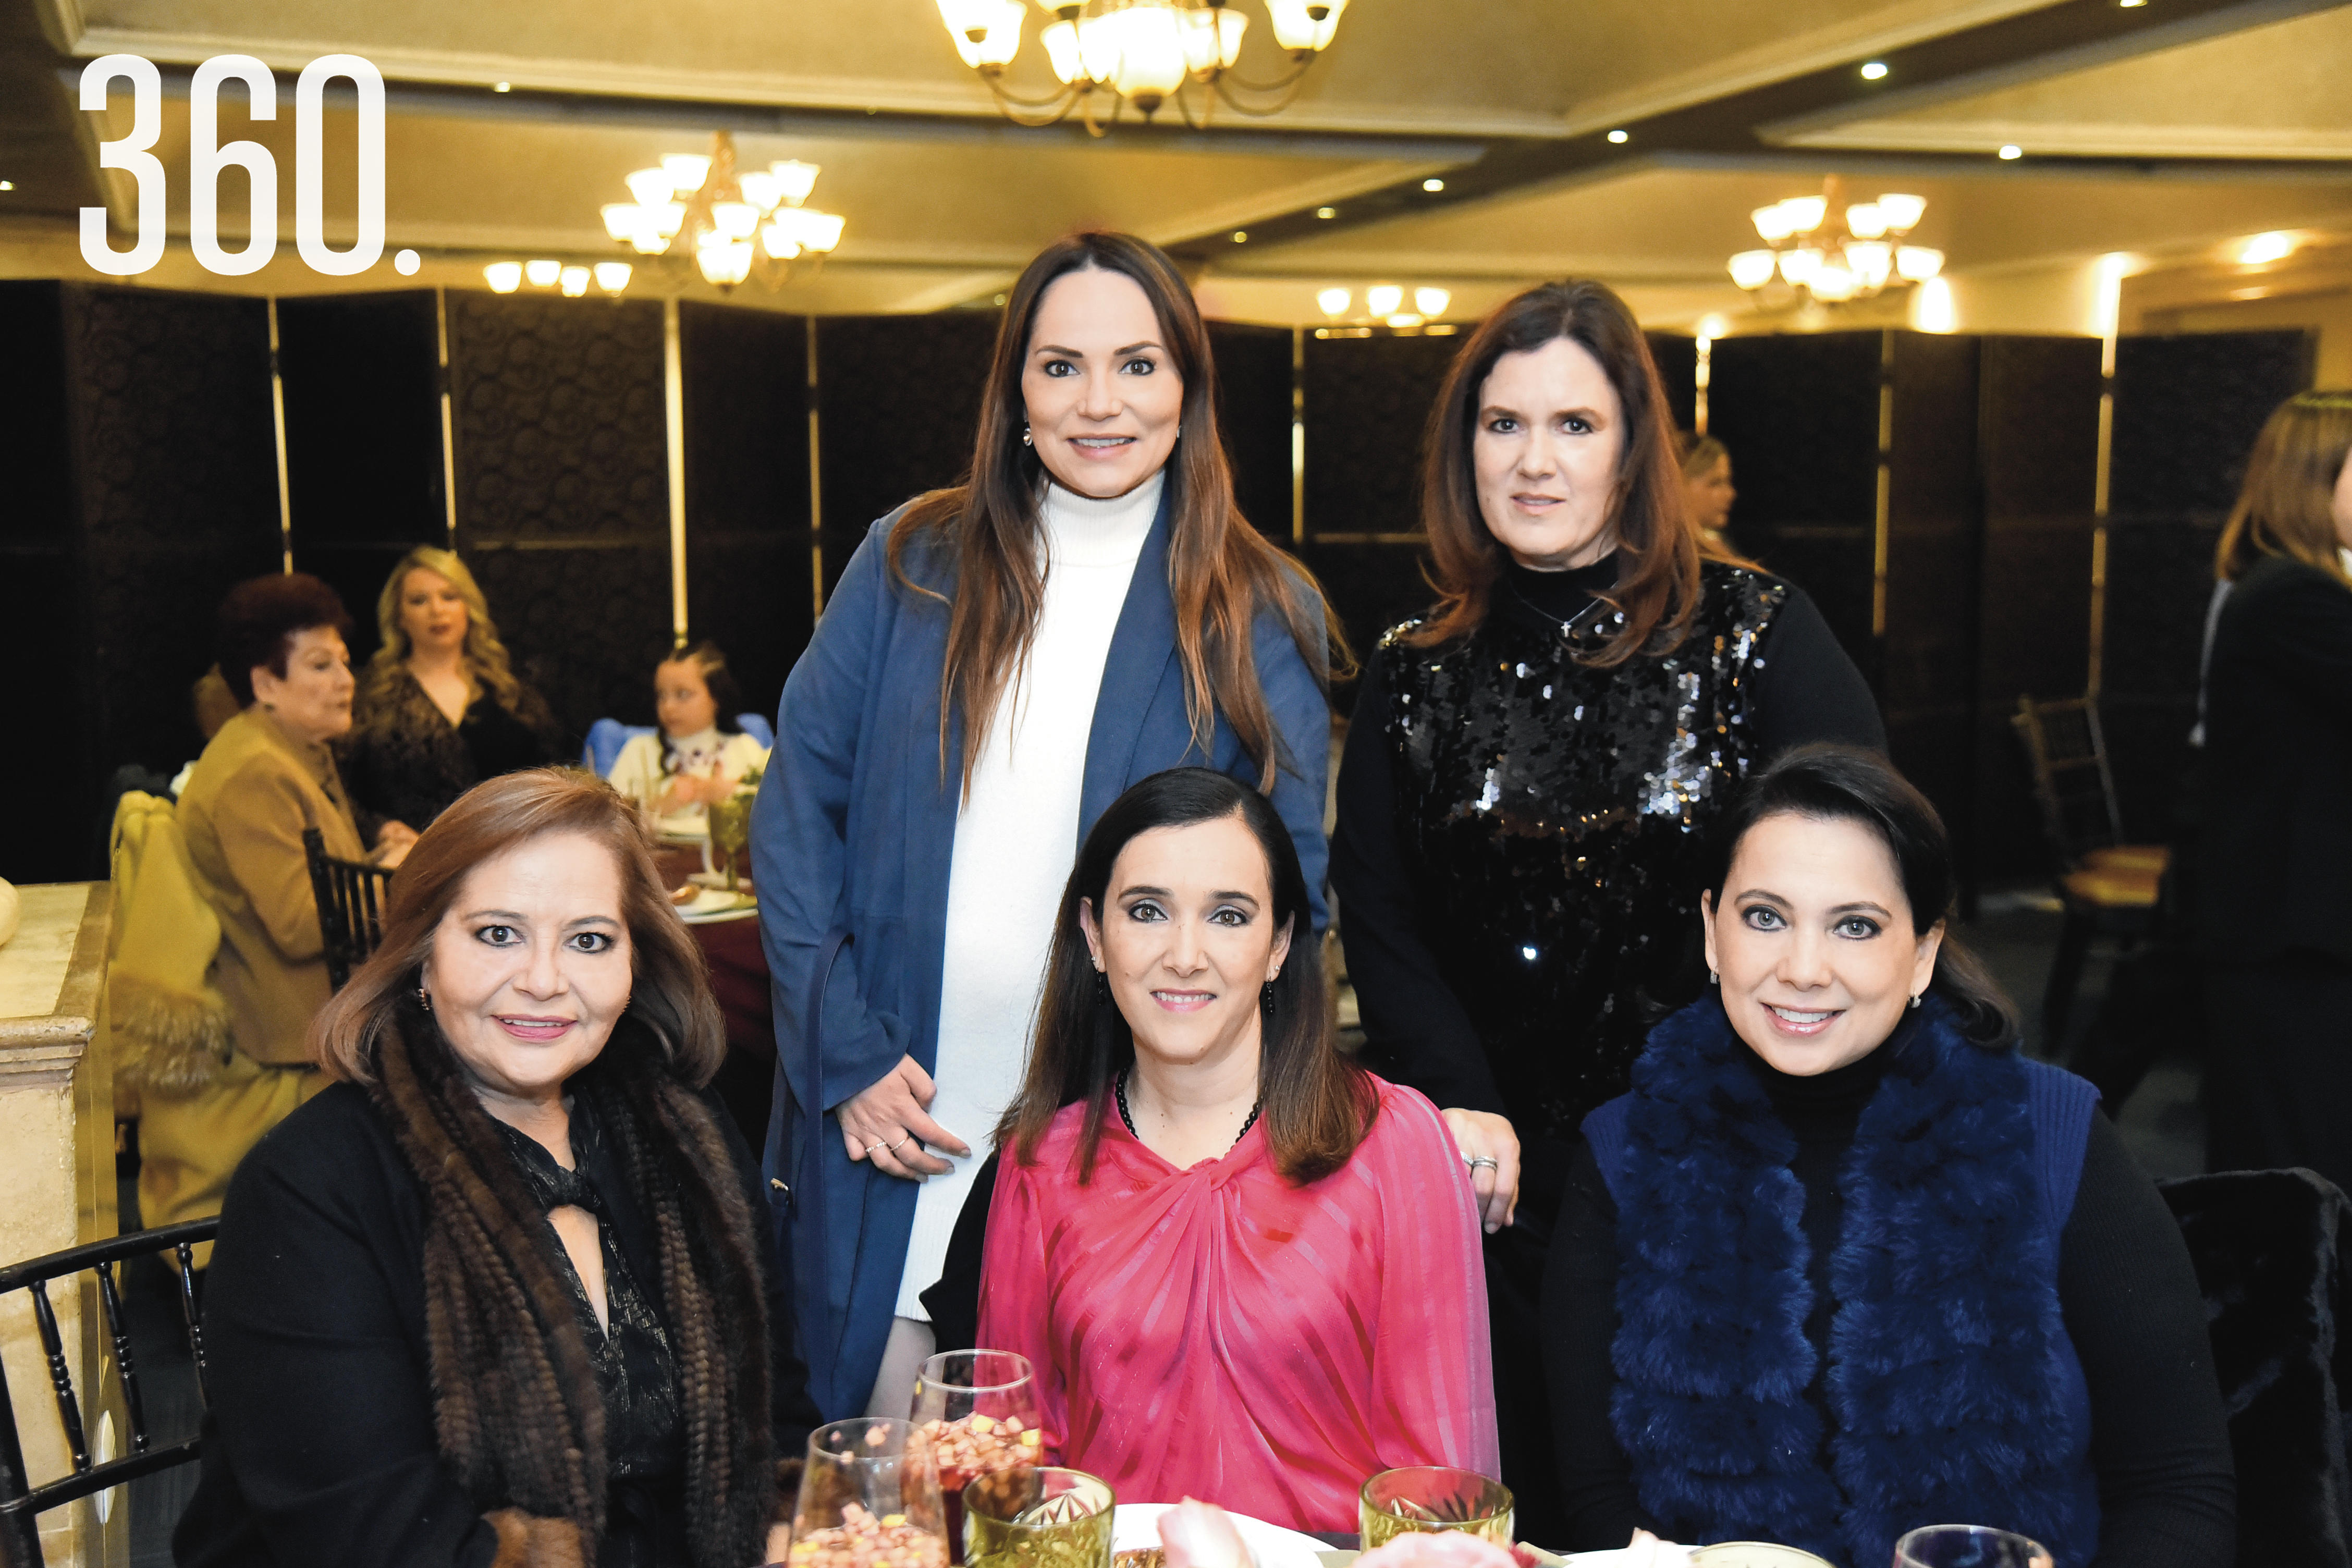 Lili de las Fuentes, Lucero Dorbecker, Lili Melo de De las Fuentes, Gabriela Cárdenas y María Isabel Romero.